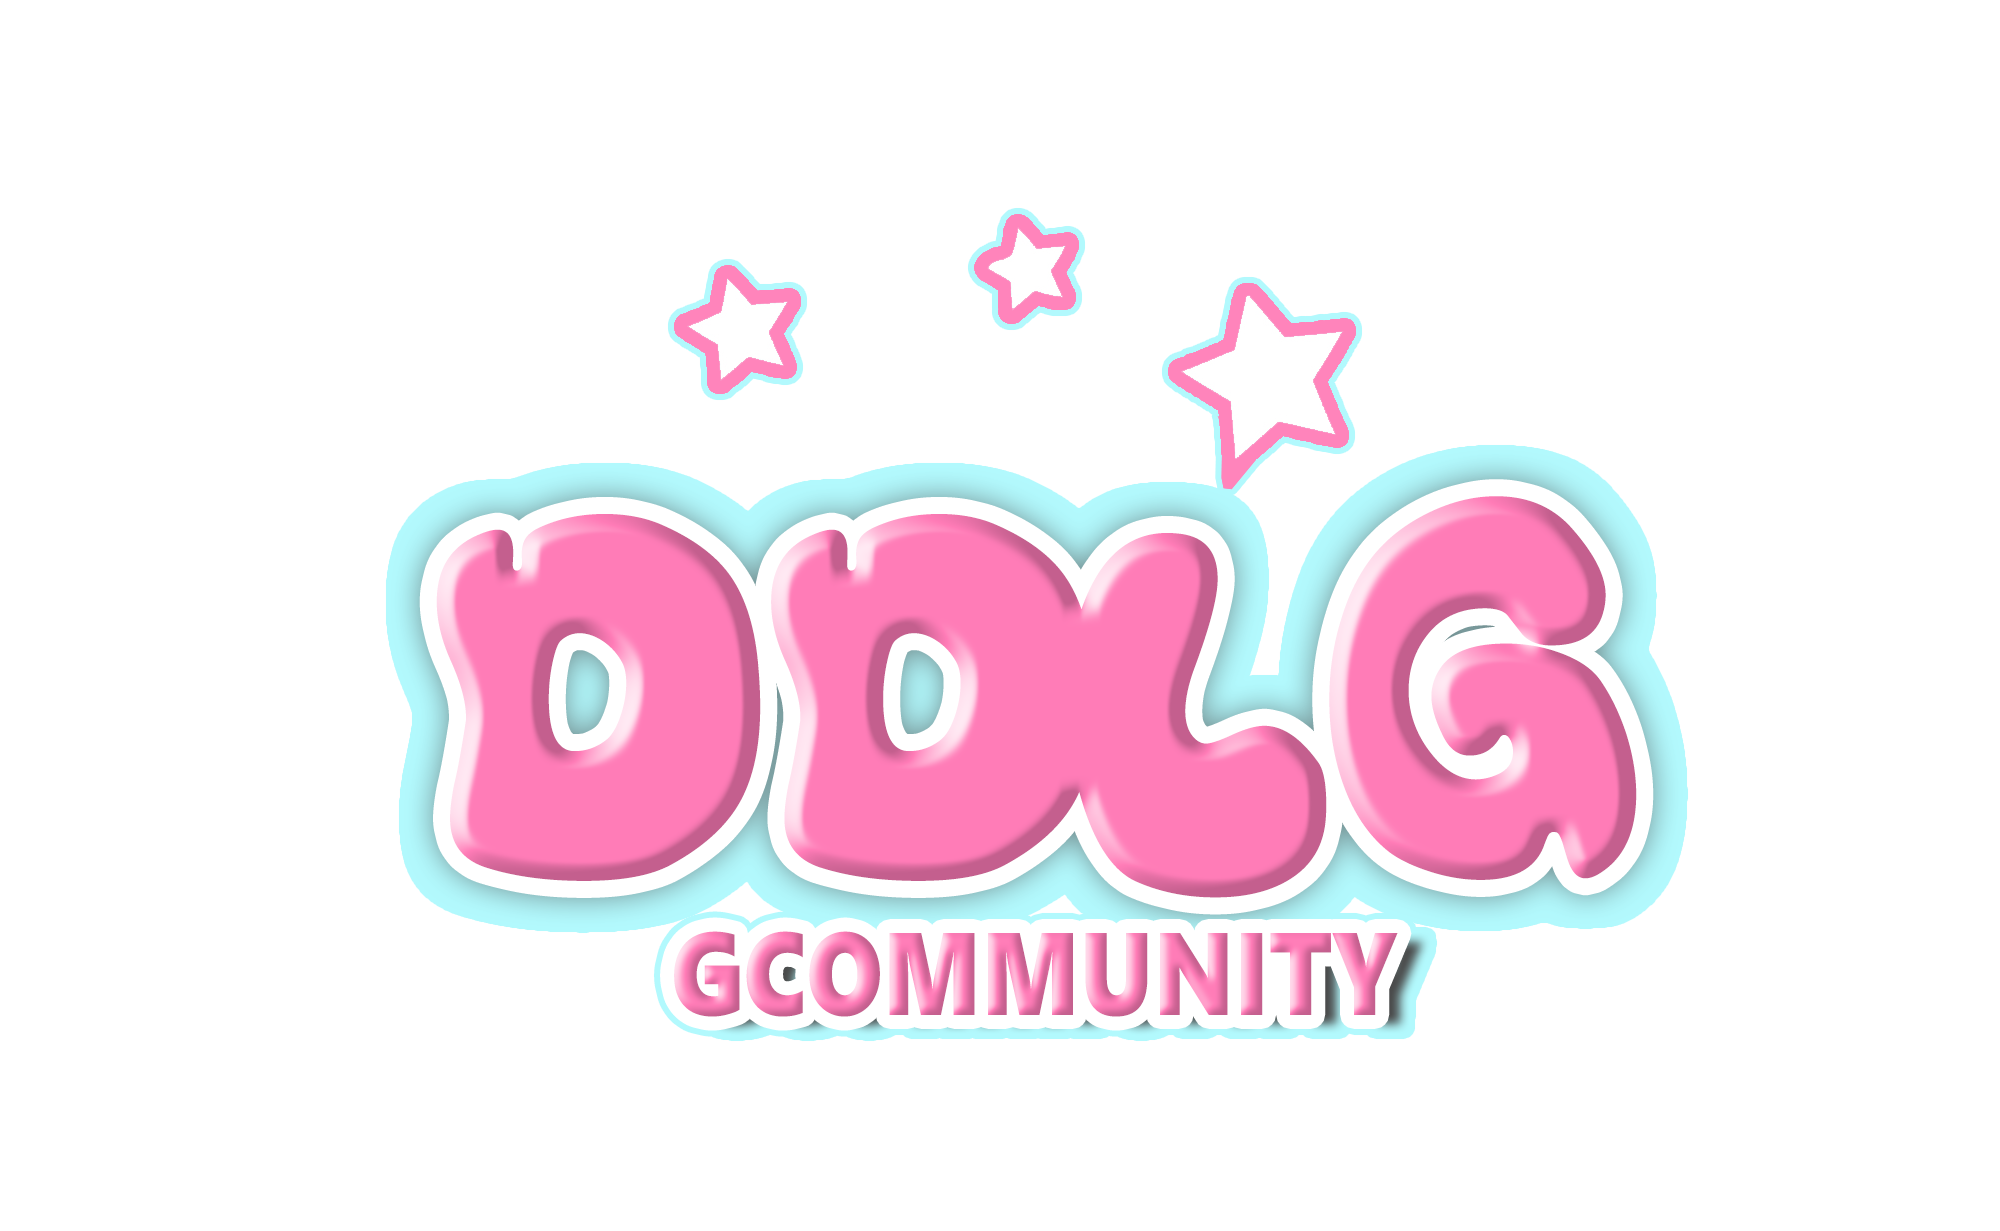 DDLG Community